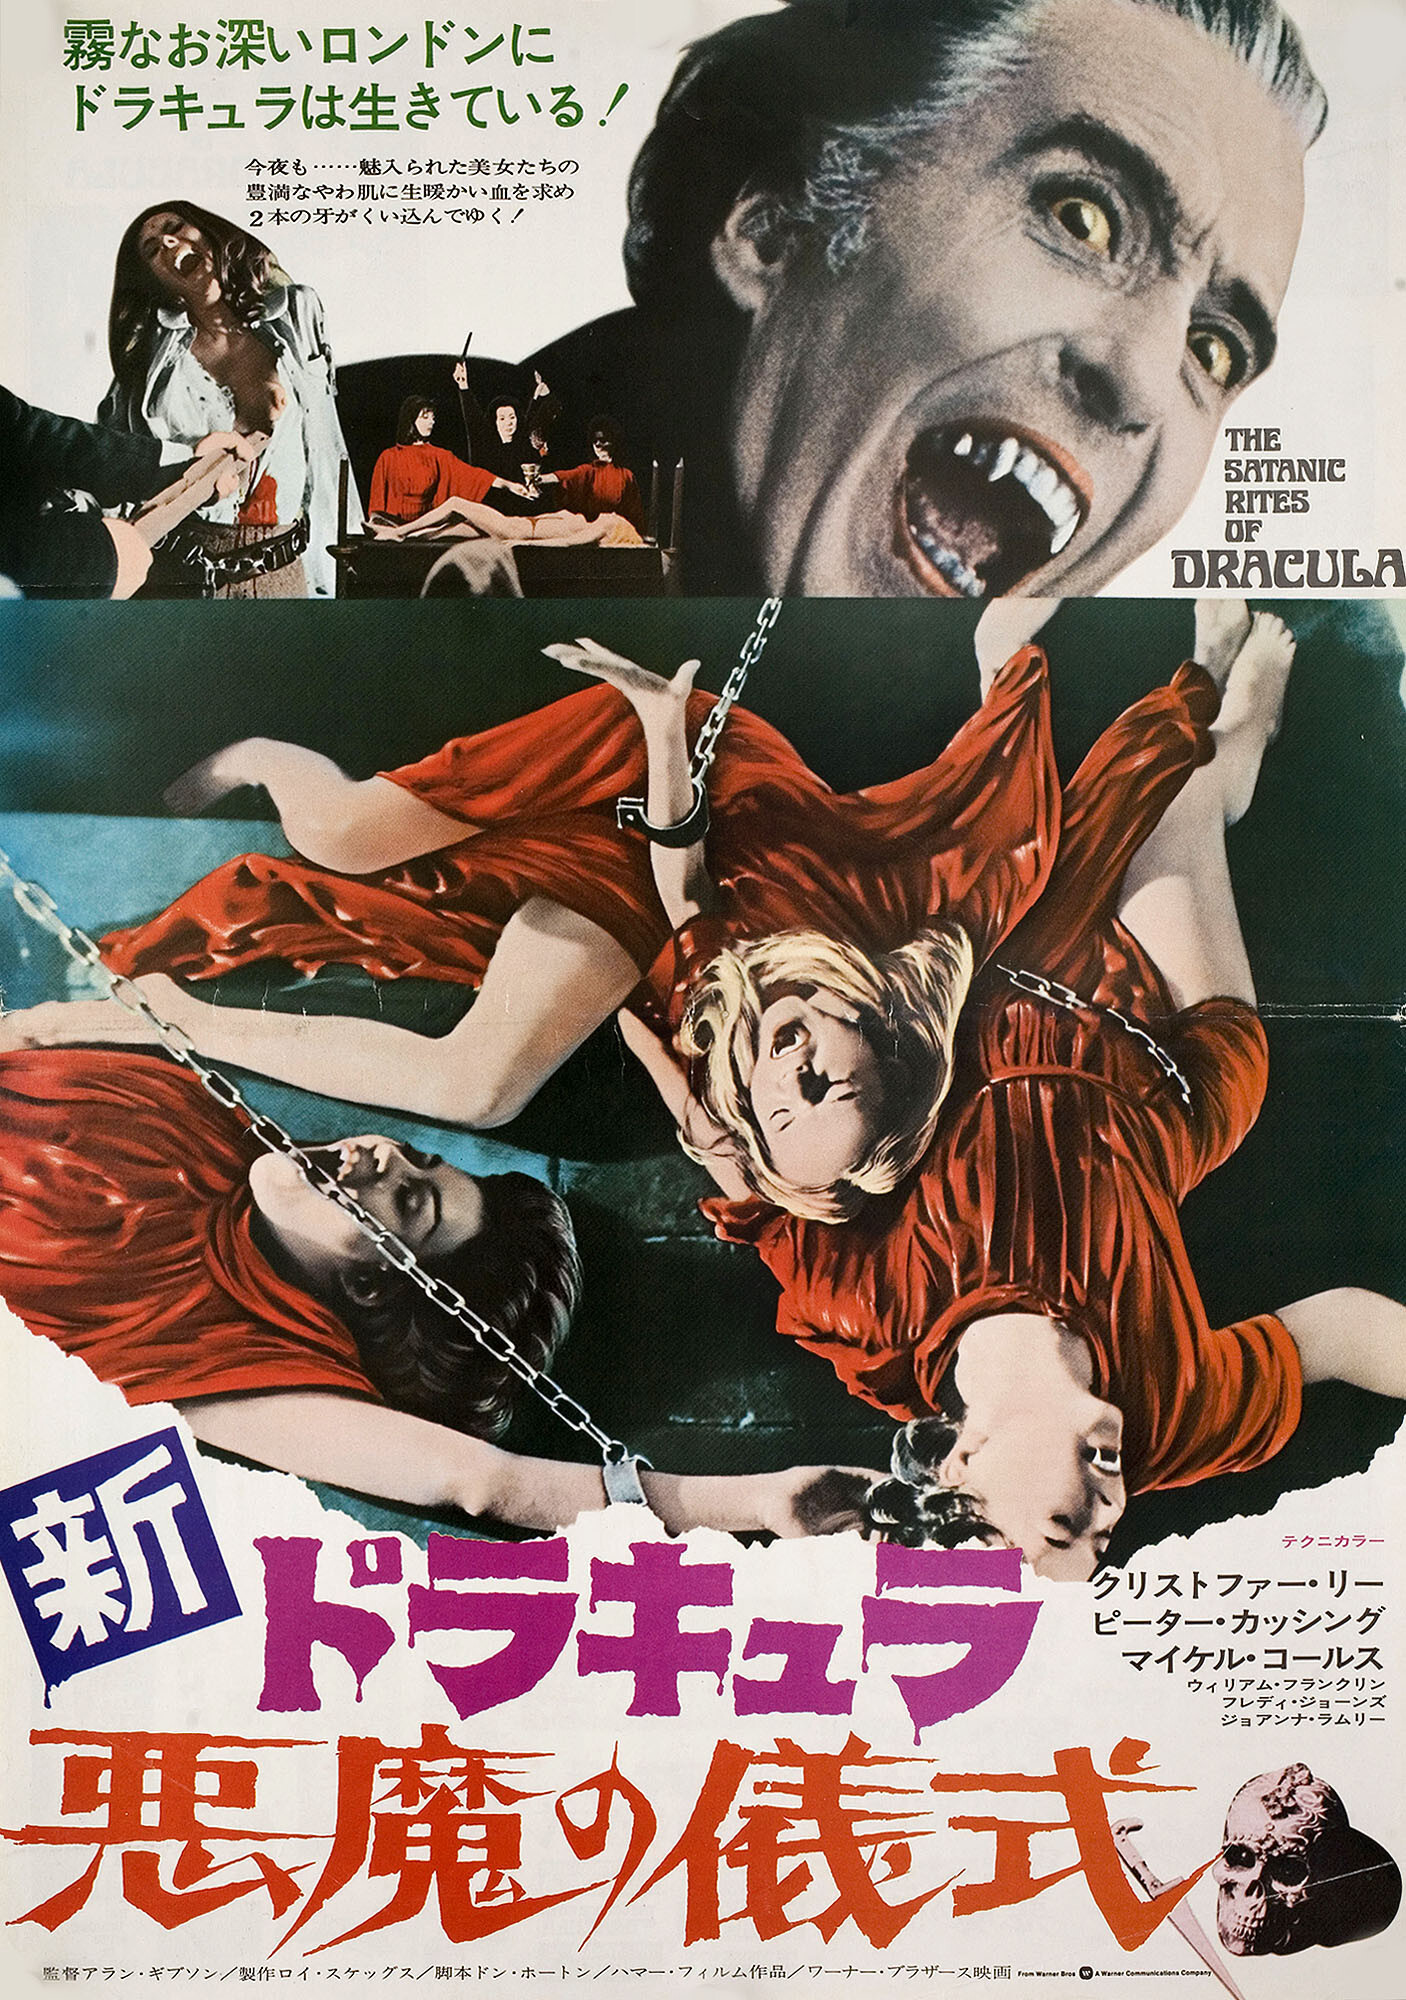 Сатанинские обряды Дракулы (The Satanic Rites of Dracula, 1973), режиссёр Алан Гибсон, японский постер к фильму (Hummer horror, 1974 год) (1)